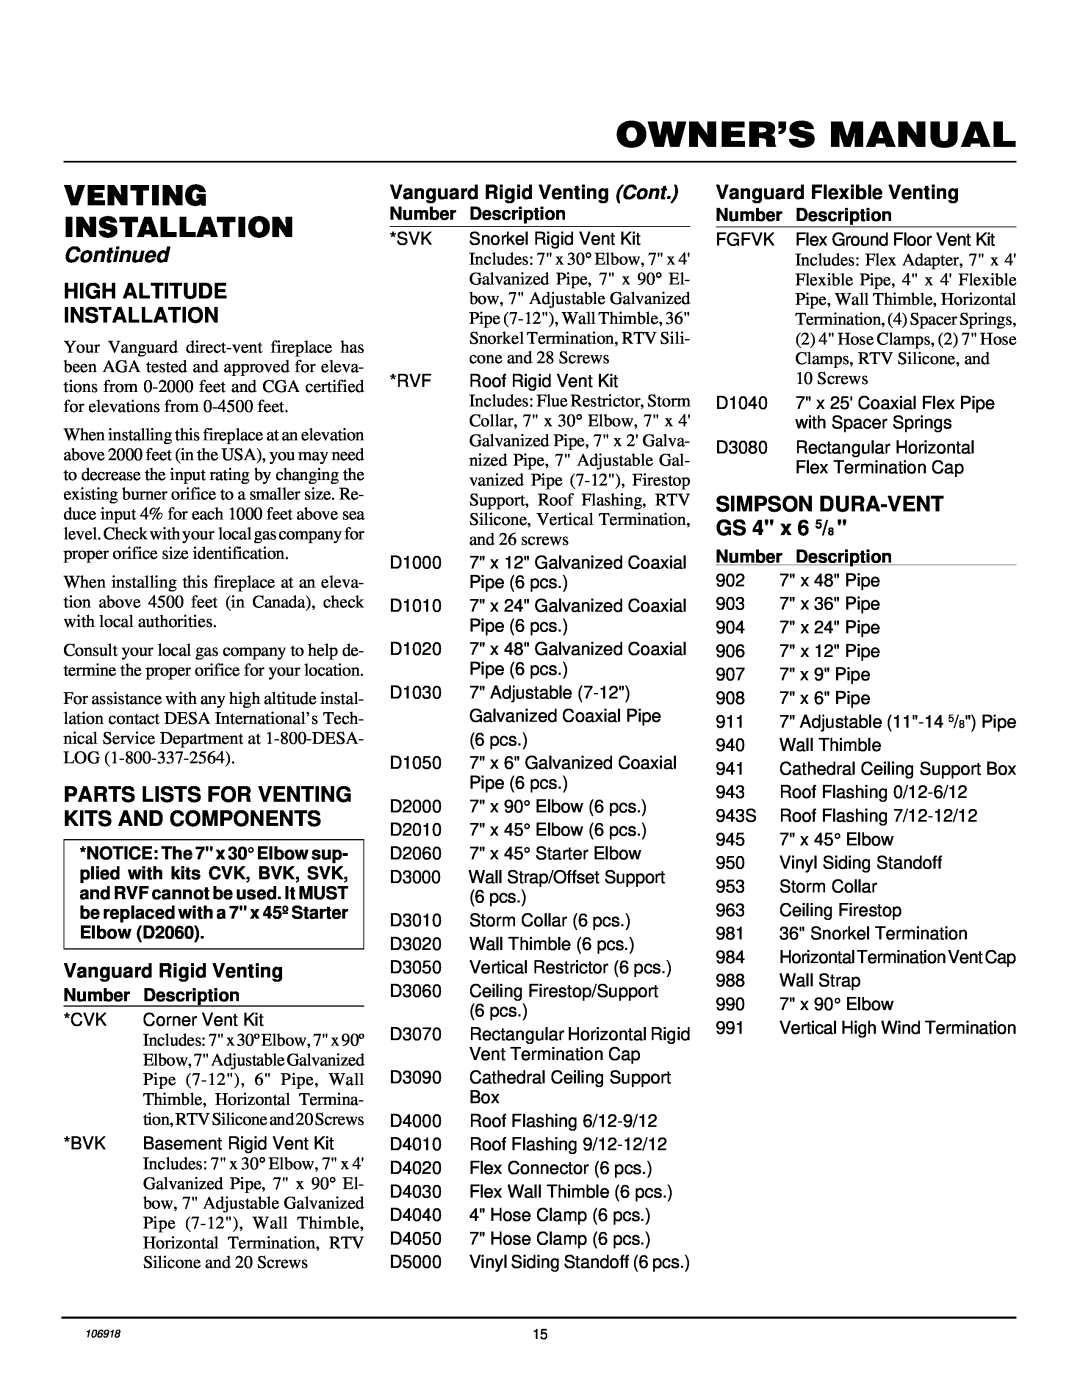 Vanguard Heating VDDVF36STN/STP Installation, Continued, Vanguard Rigid Venting Cont, Vanguard Flexible Venting 